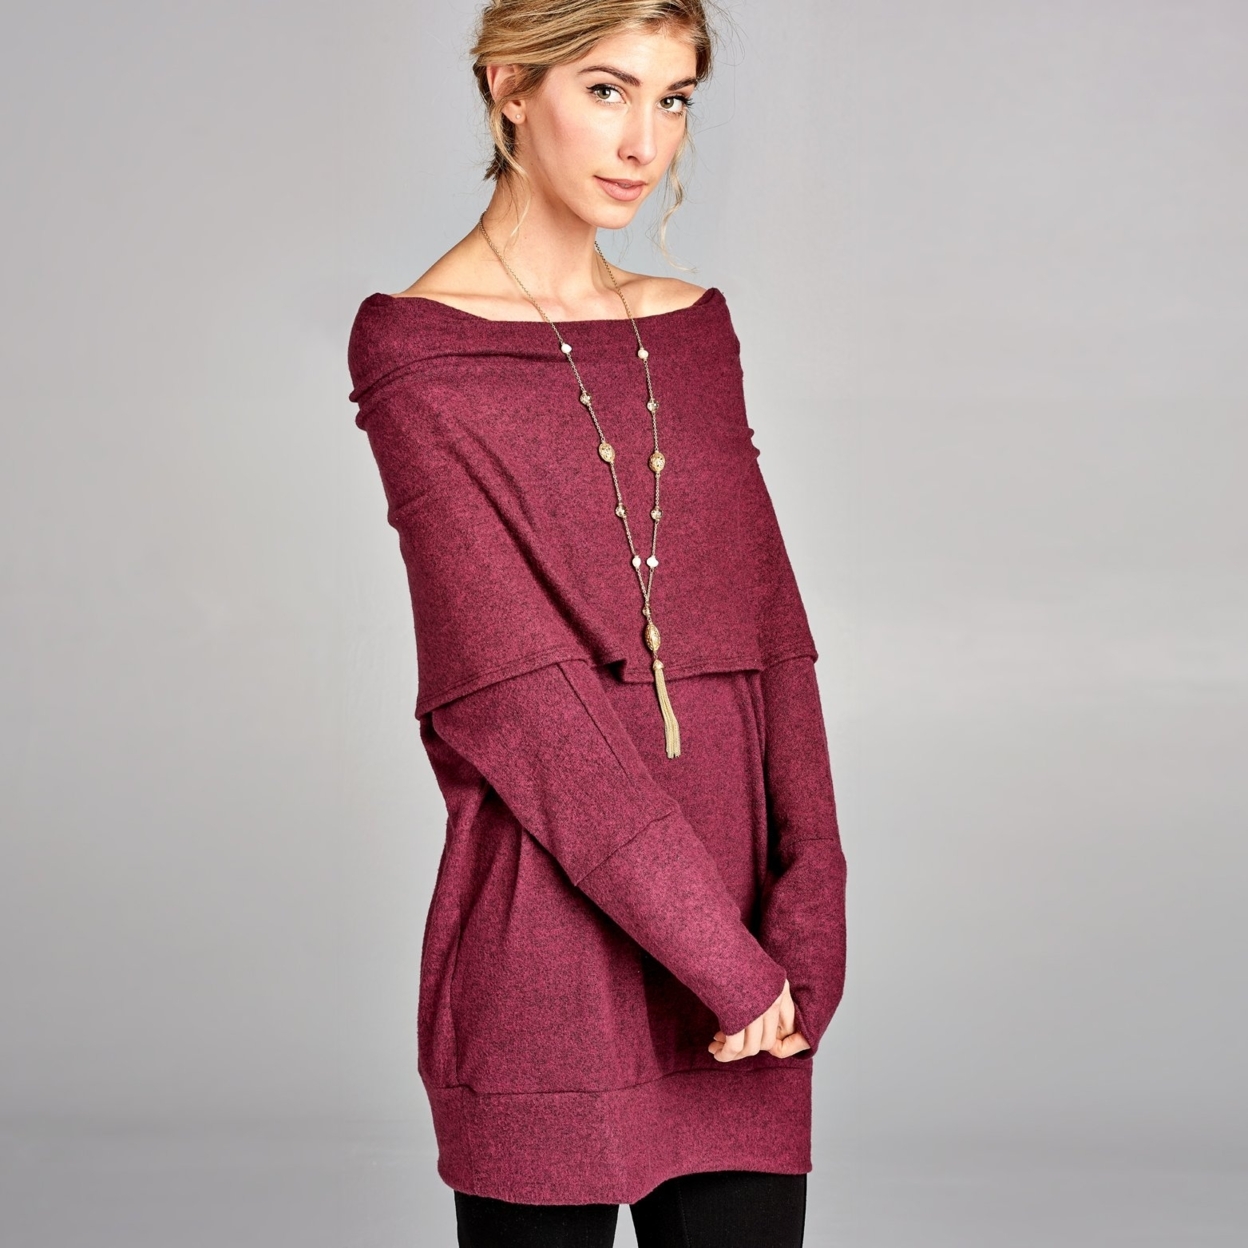 Oversized Cowl Neck Marled Sweater - Burgundy, Medium (8-10)